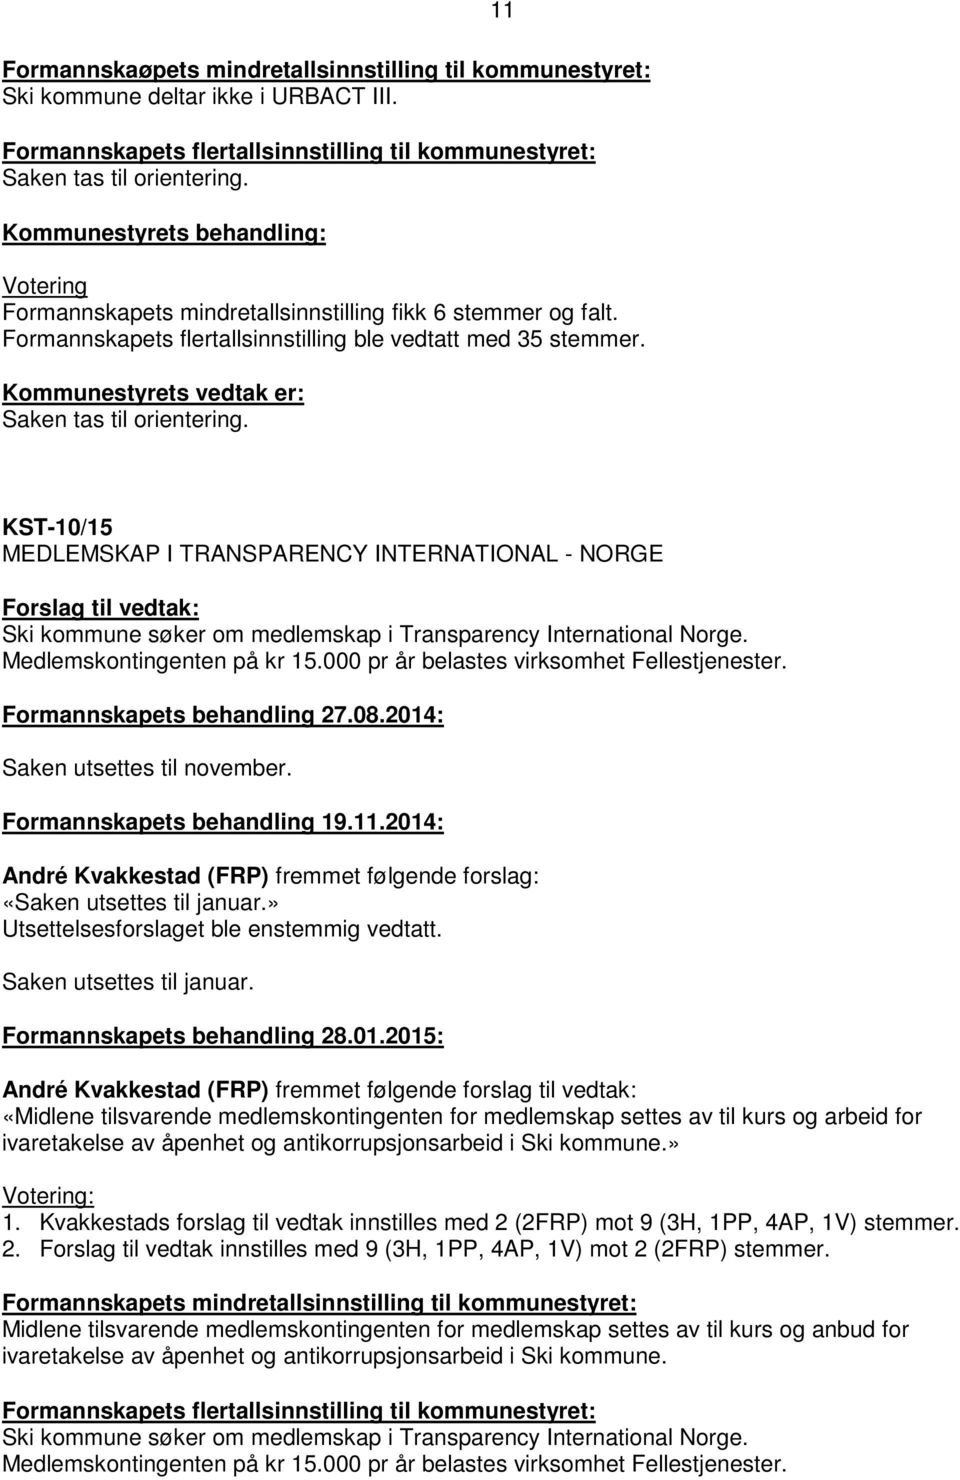 KST-10/15 MEDLEMSKAP I TRANSPARENCY INTERNATIONAL - NORGE Ski kommune søker om medlemskap i Transparency International Norge. Medlemskontingenten på kr 15.